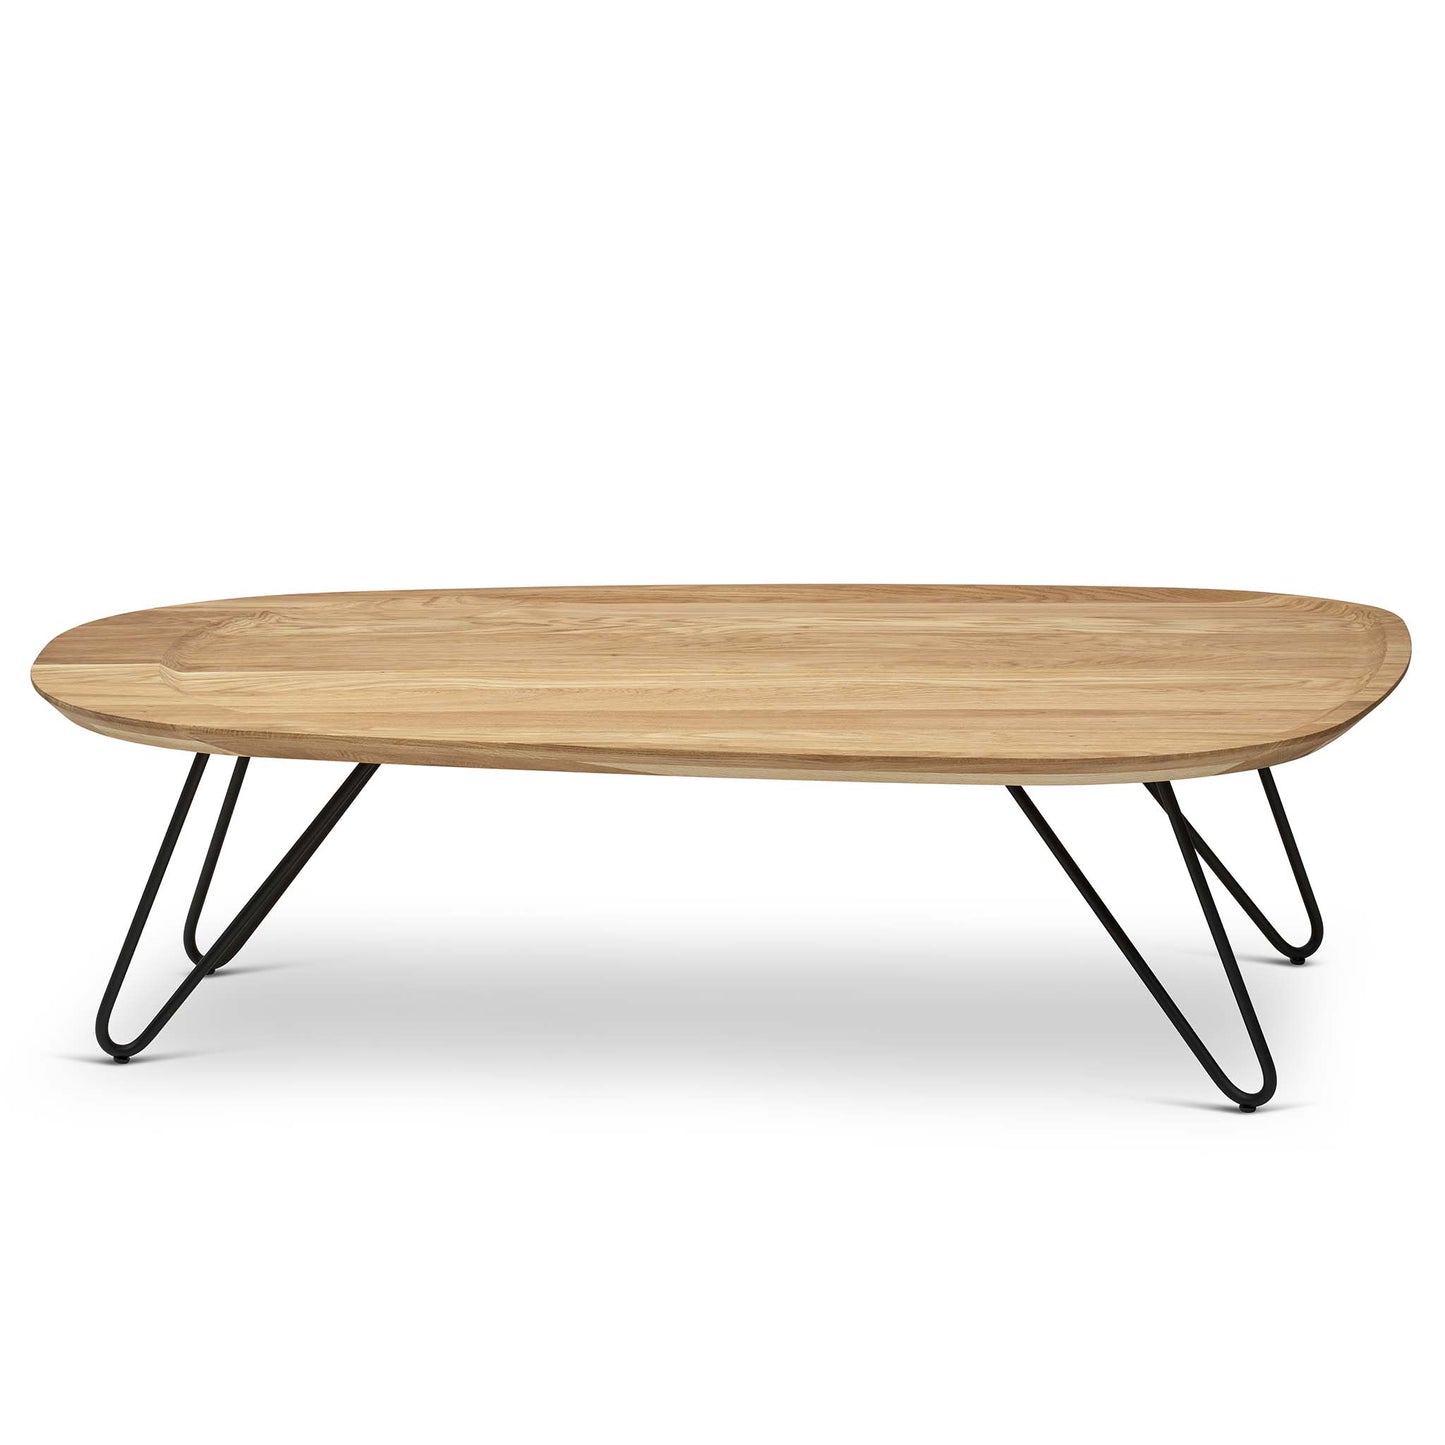 Snyggt soffbord med runda linjer och svarta metallben